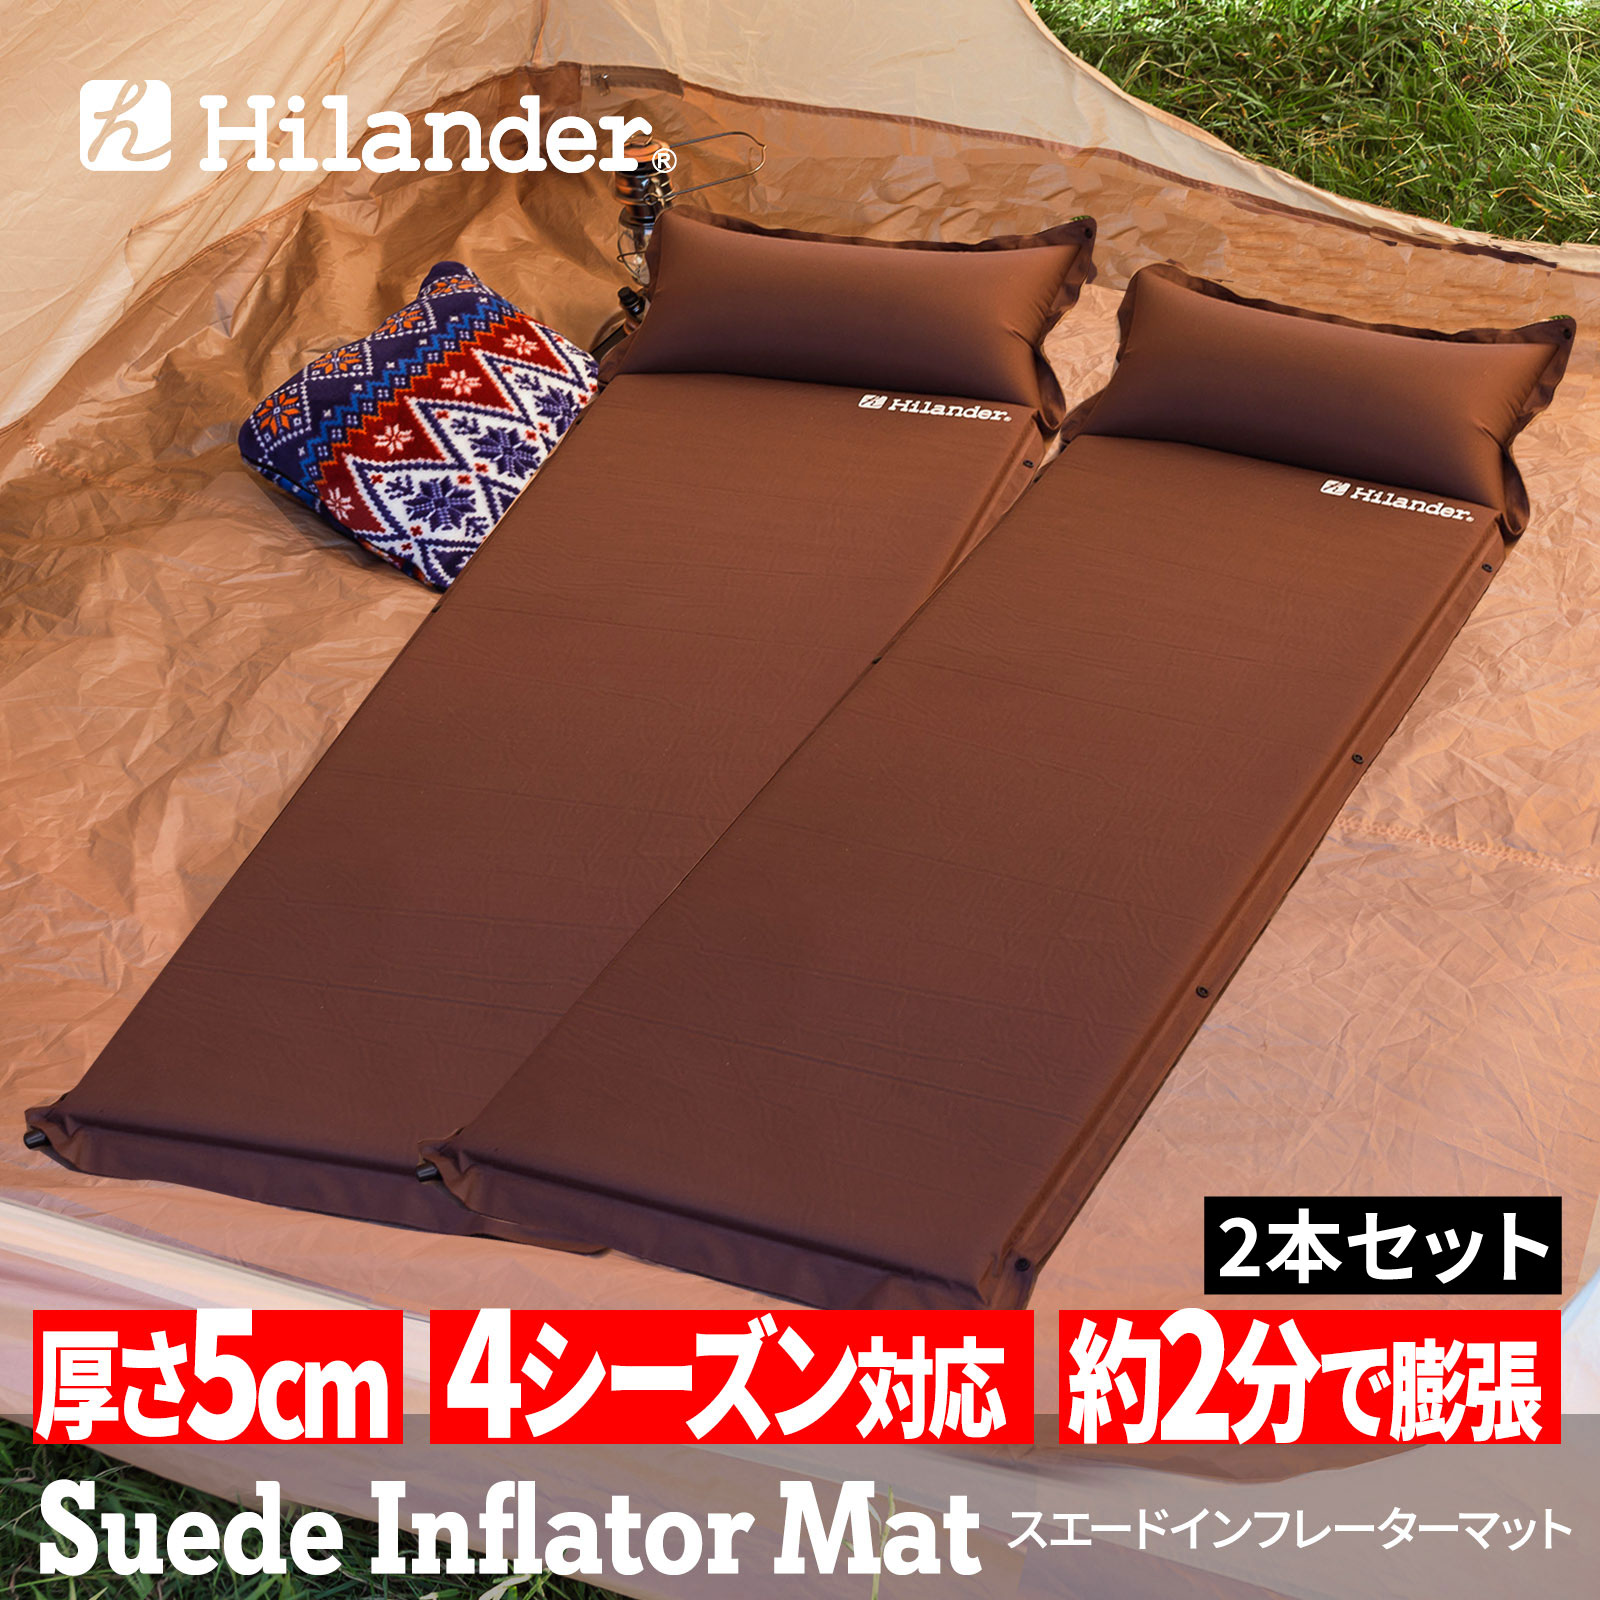 Hilander(ハイランダー) スエードインフレーターマット2(ポンプバッグ付き) 5.0cm【お得な2点セット】【1年保証】 シングル(2本) ブラウン UK-36